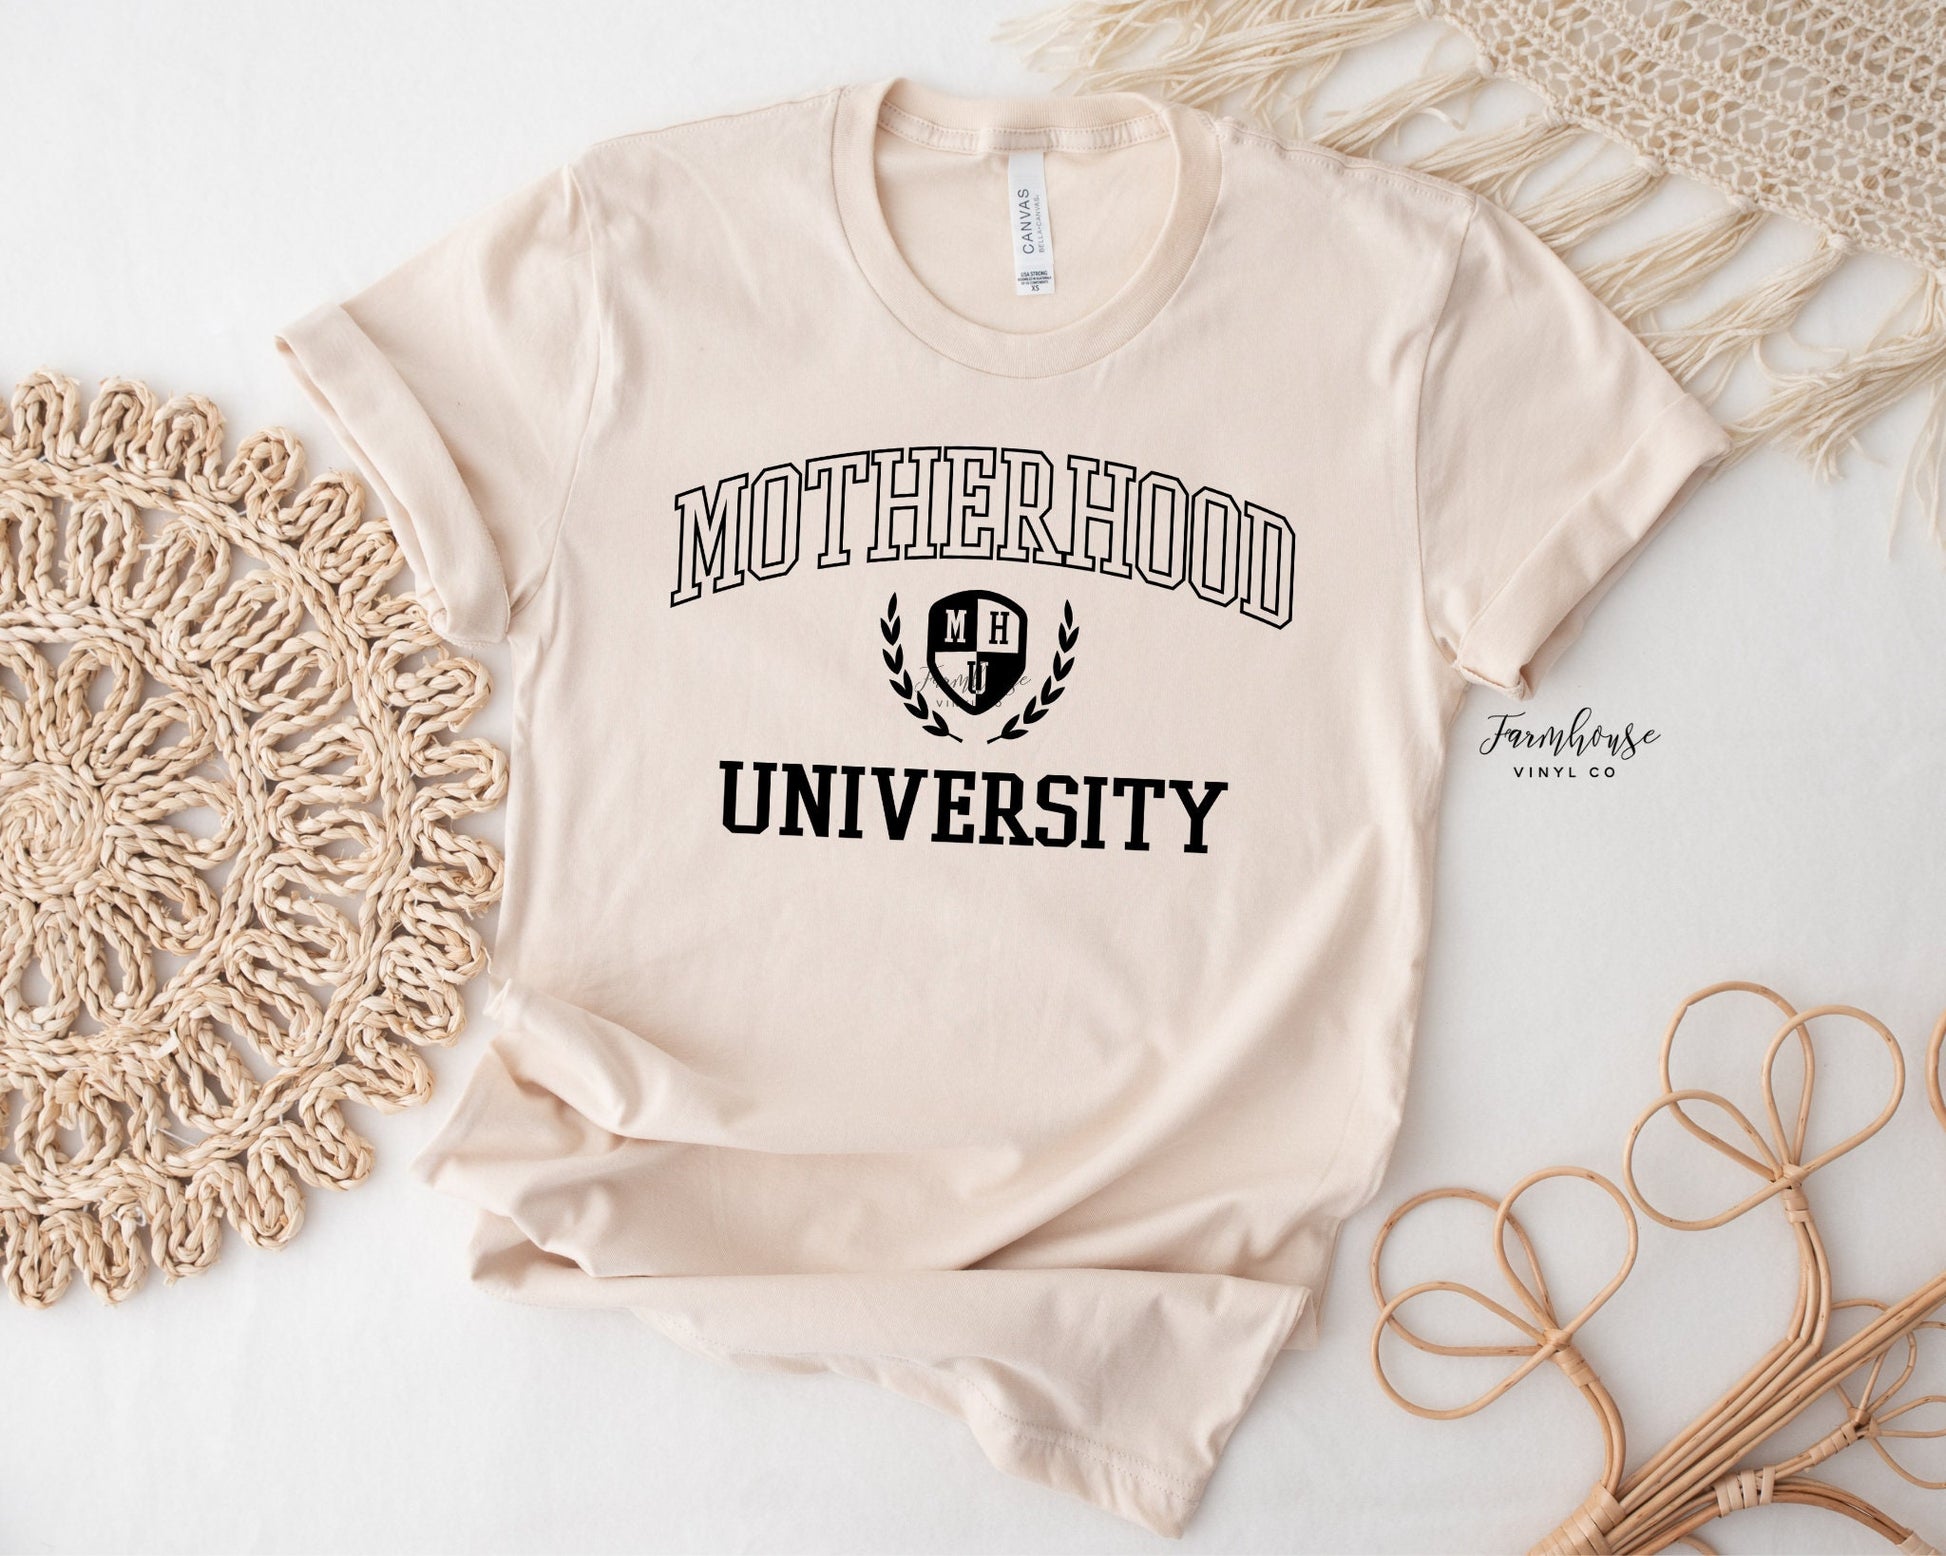 Motherhood University Shirt - Farmhouse Vinyl Co